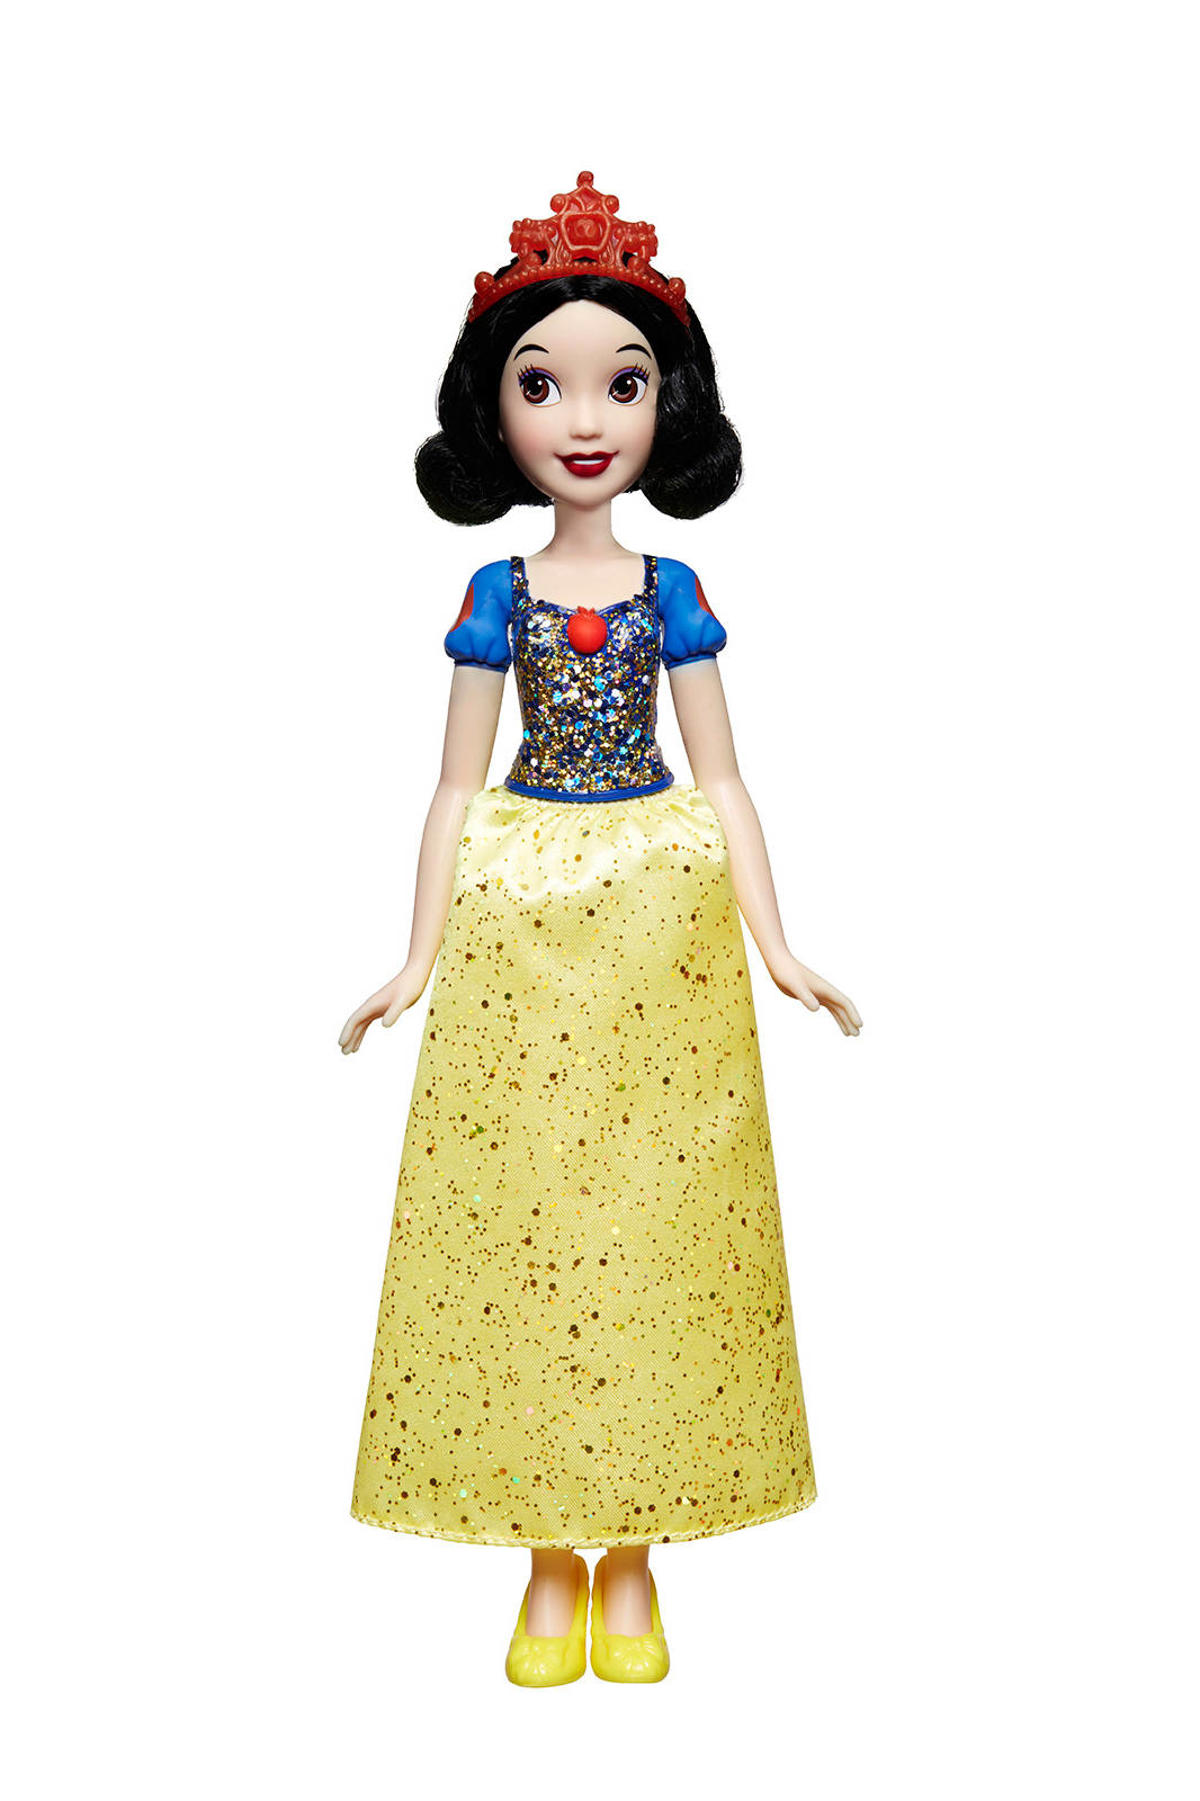 Persoon belast met sportgame 鍔 Spanje Disney Princess Royal Shimmer pop Sneeuwwitje | wehkamp